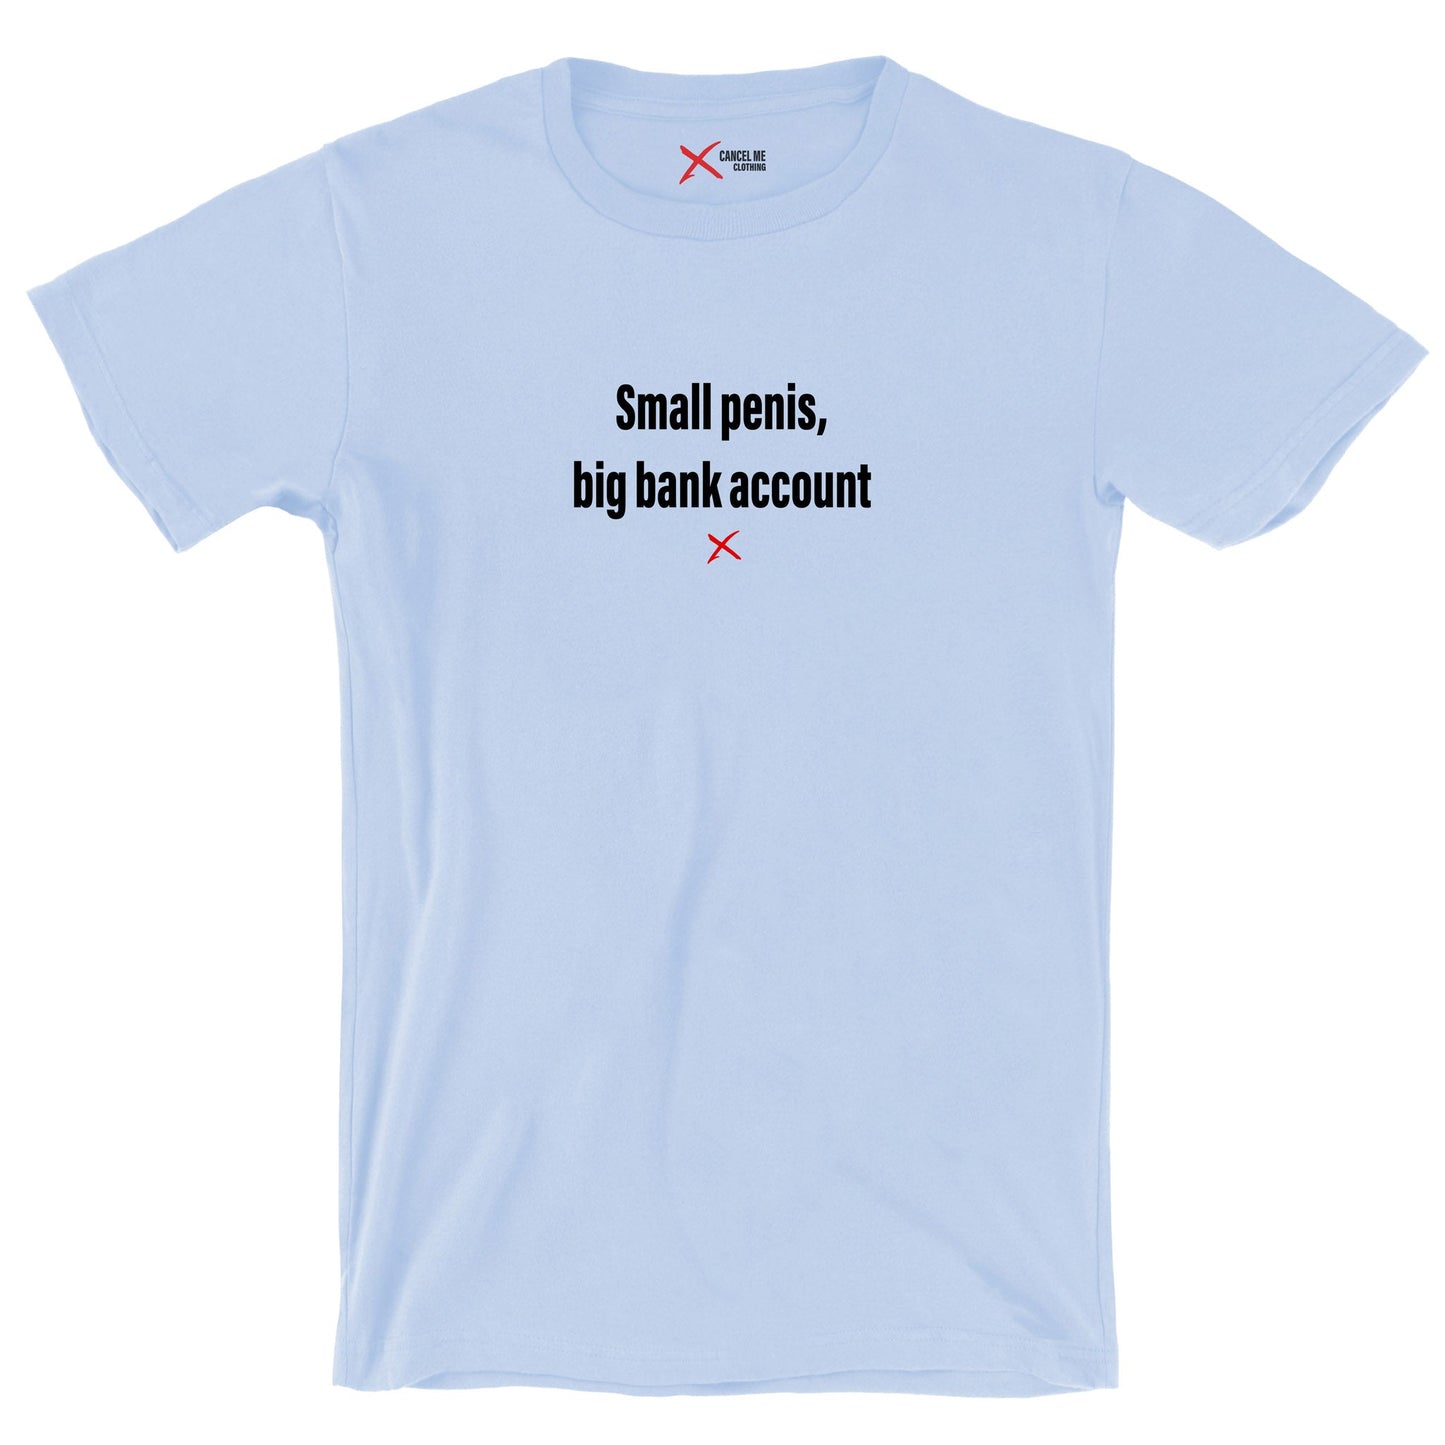 Small penis, big bank account - Shirt